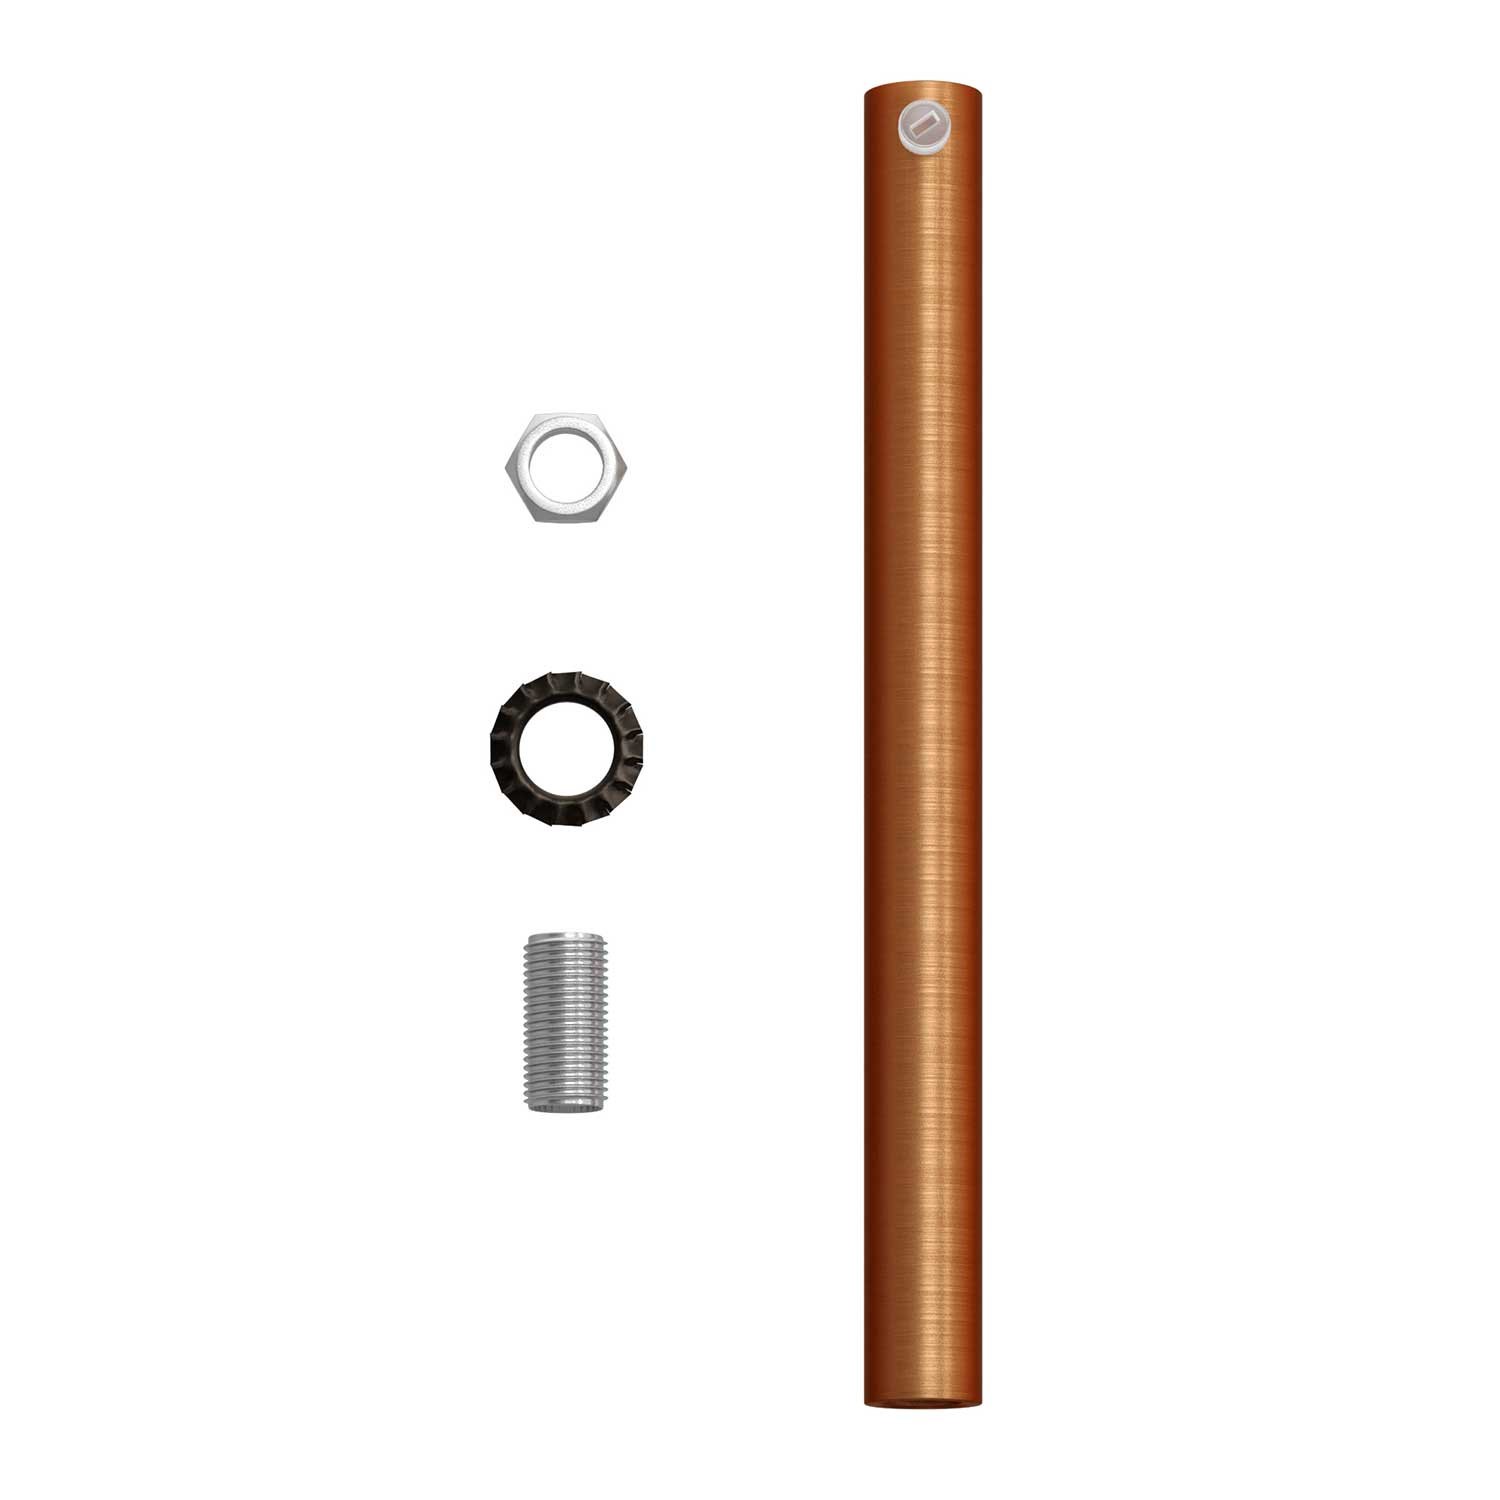 Cylindrisk dragavlastare i metall 15 cm lång komplett med gängstång, mutter samt låsbricka